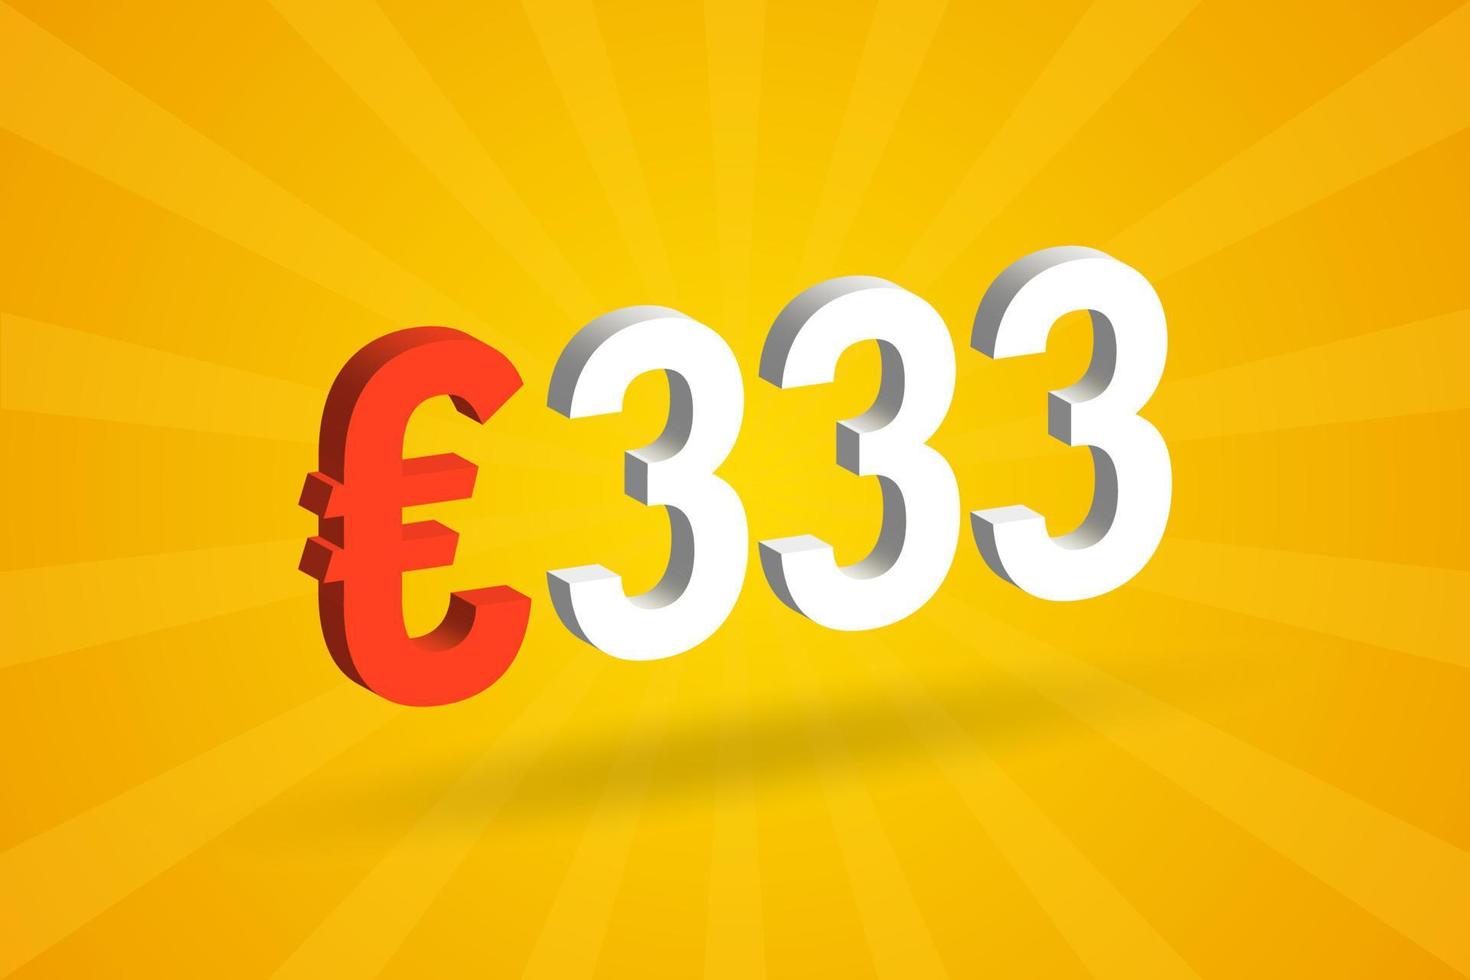 333 euro moeda 3d símbolo de texto de vetor. vetor de estoque de dinheiro da união europeia 3d 333 euros